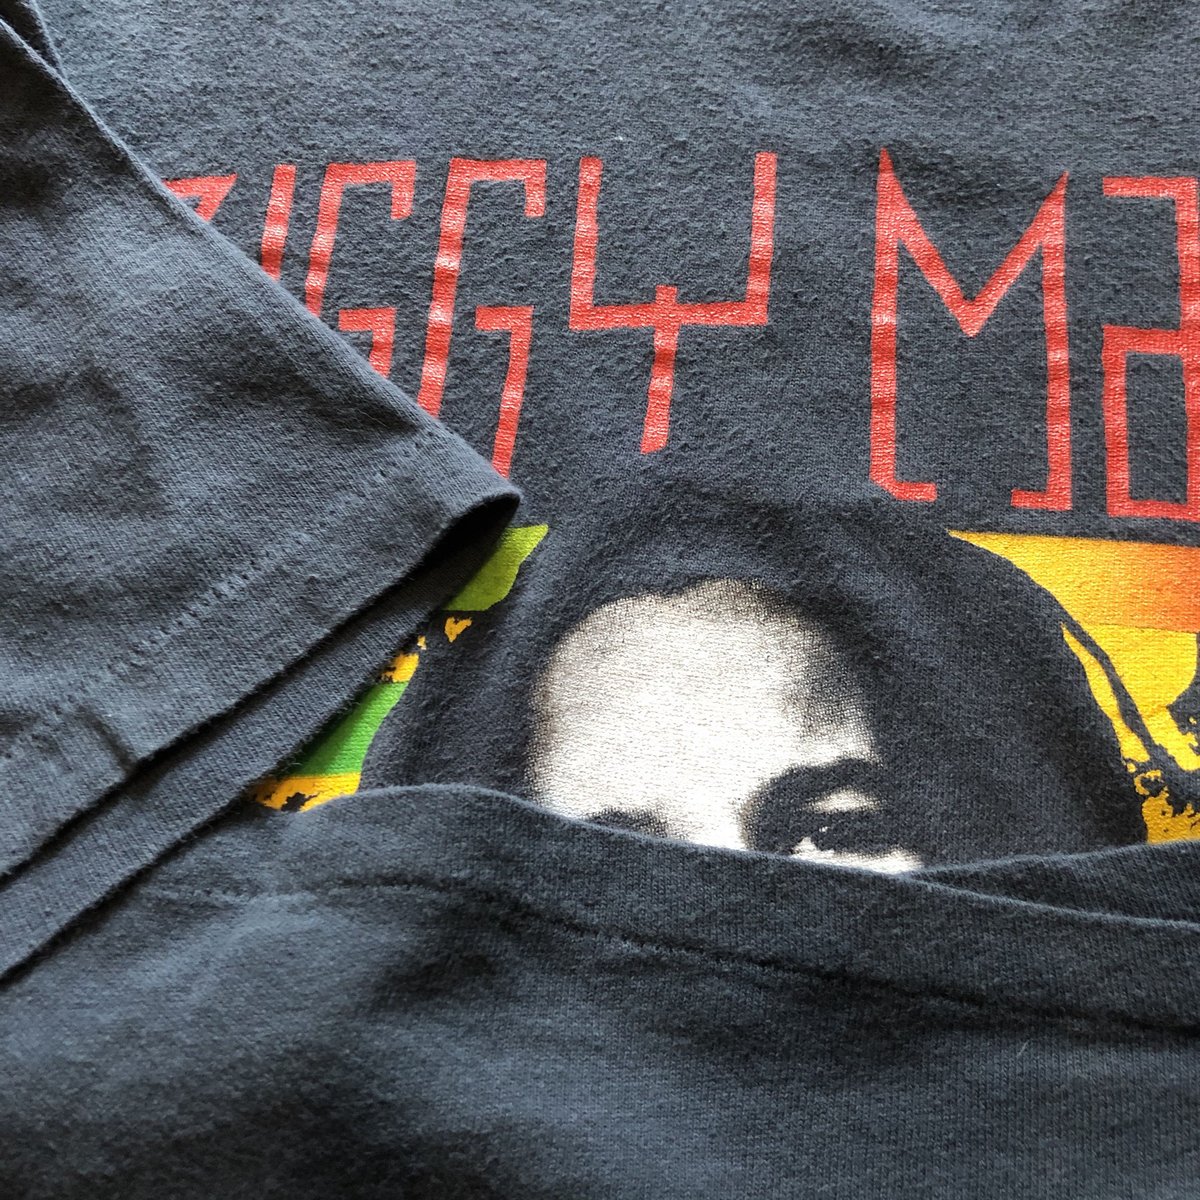 ジギーマーリー　Ziggy Marley KOZMIK Tシャツ　90's